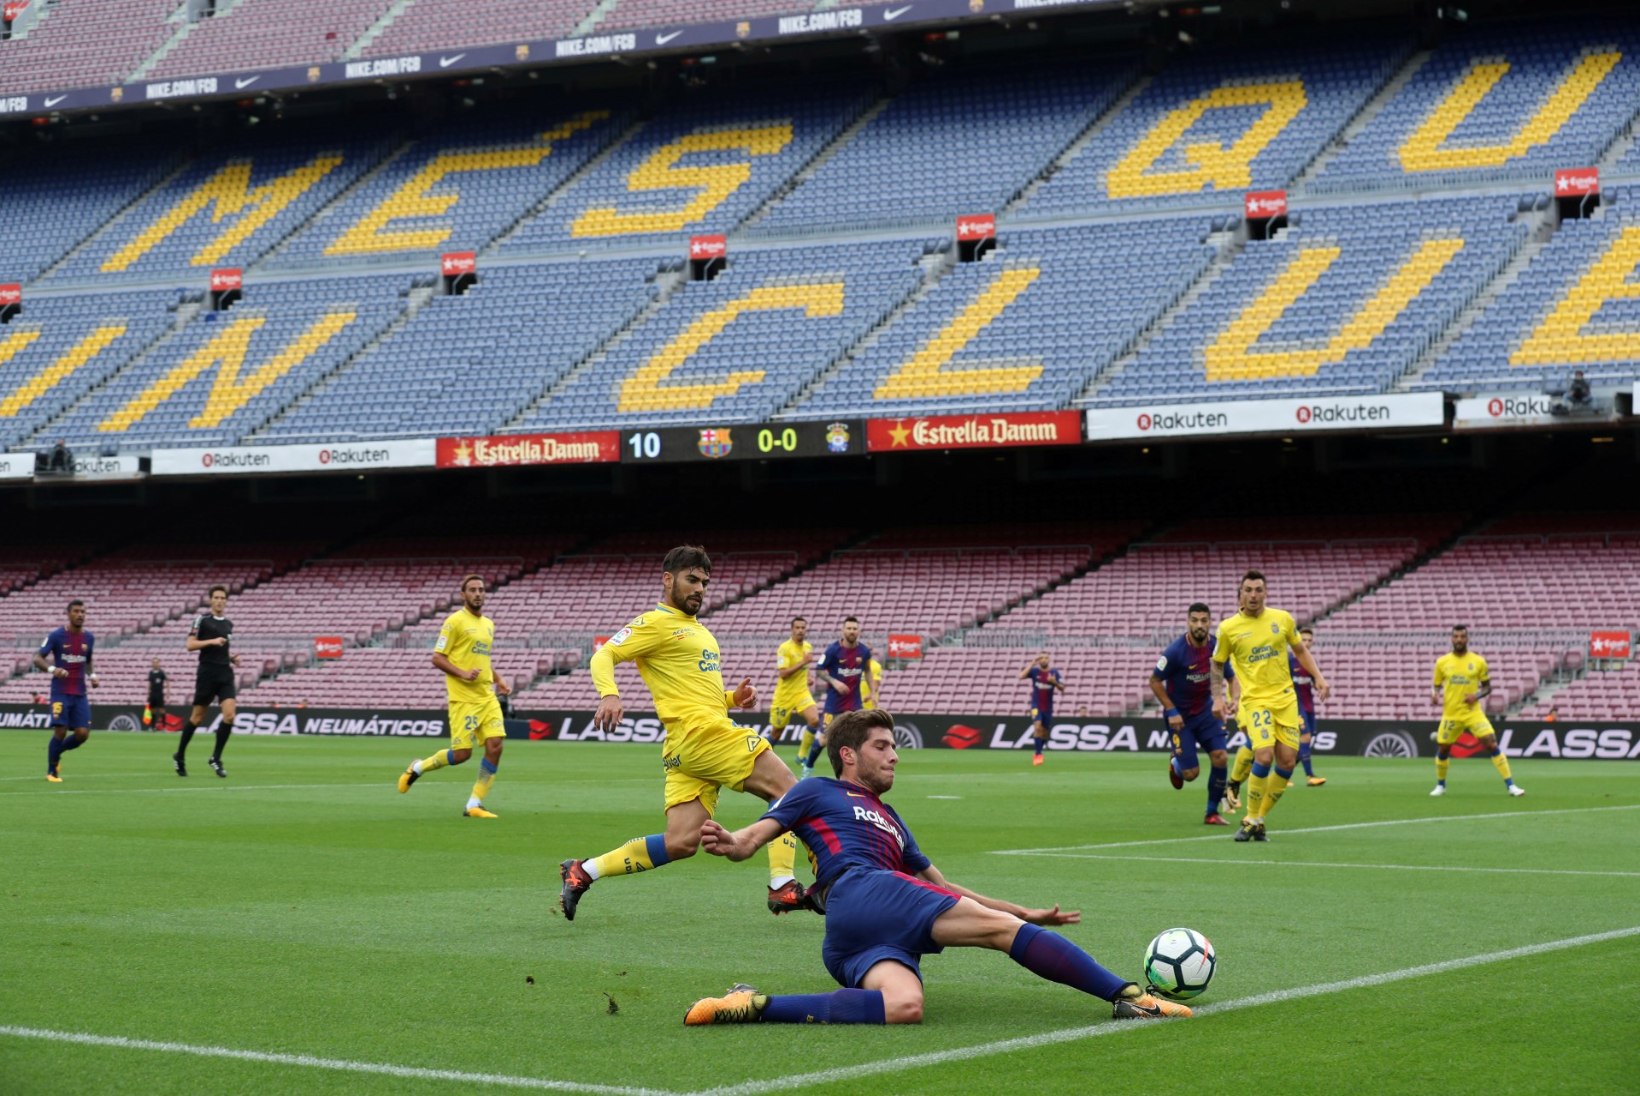 NII SEE JUHTUS | Sport 03.10: Barcelona jalgpalliklubis on ärevad ajad